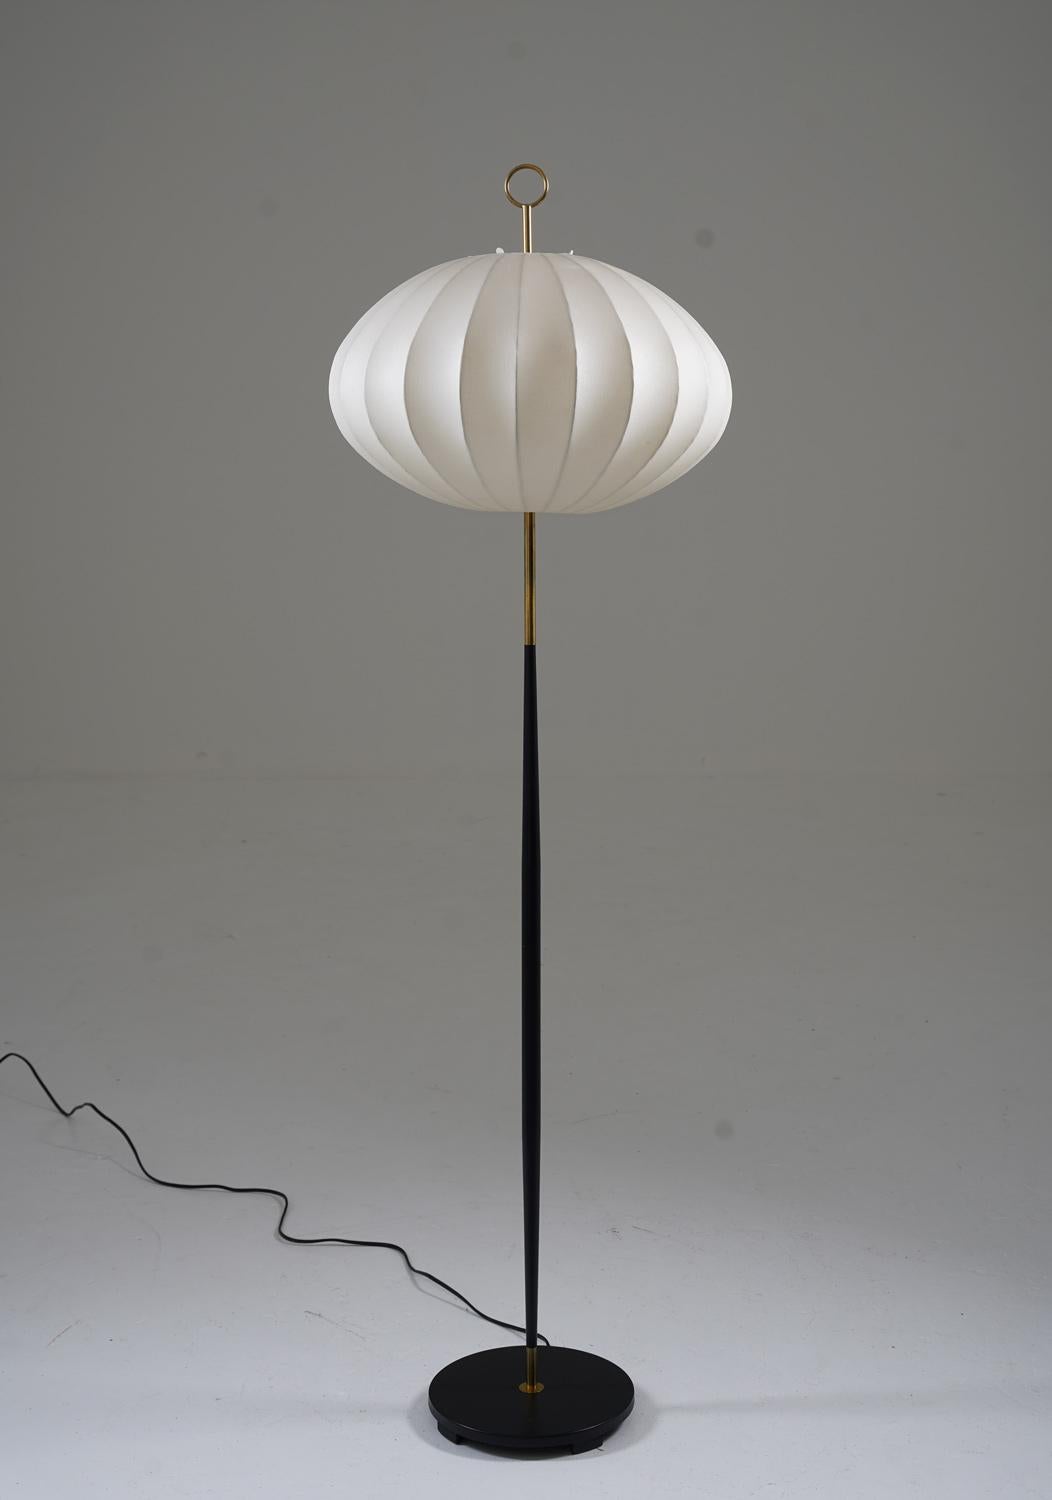 Atemberaubende Stehleuchte von ASEA, Schweden, 1950er Jahre.
Schöne Lampe mit einem minimalistischen Design mit schönen Details. Der Sockel hat seine ursprüngliche schwarze Farbe und ist in nahezu neuwertigem Zustand. Die Lichtquelle wird von einem